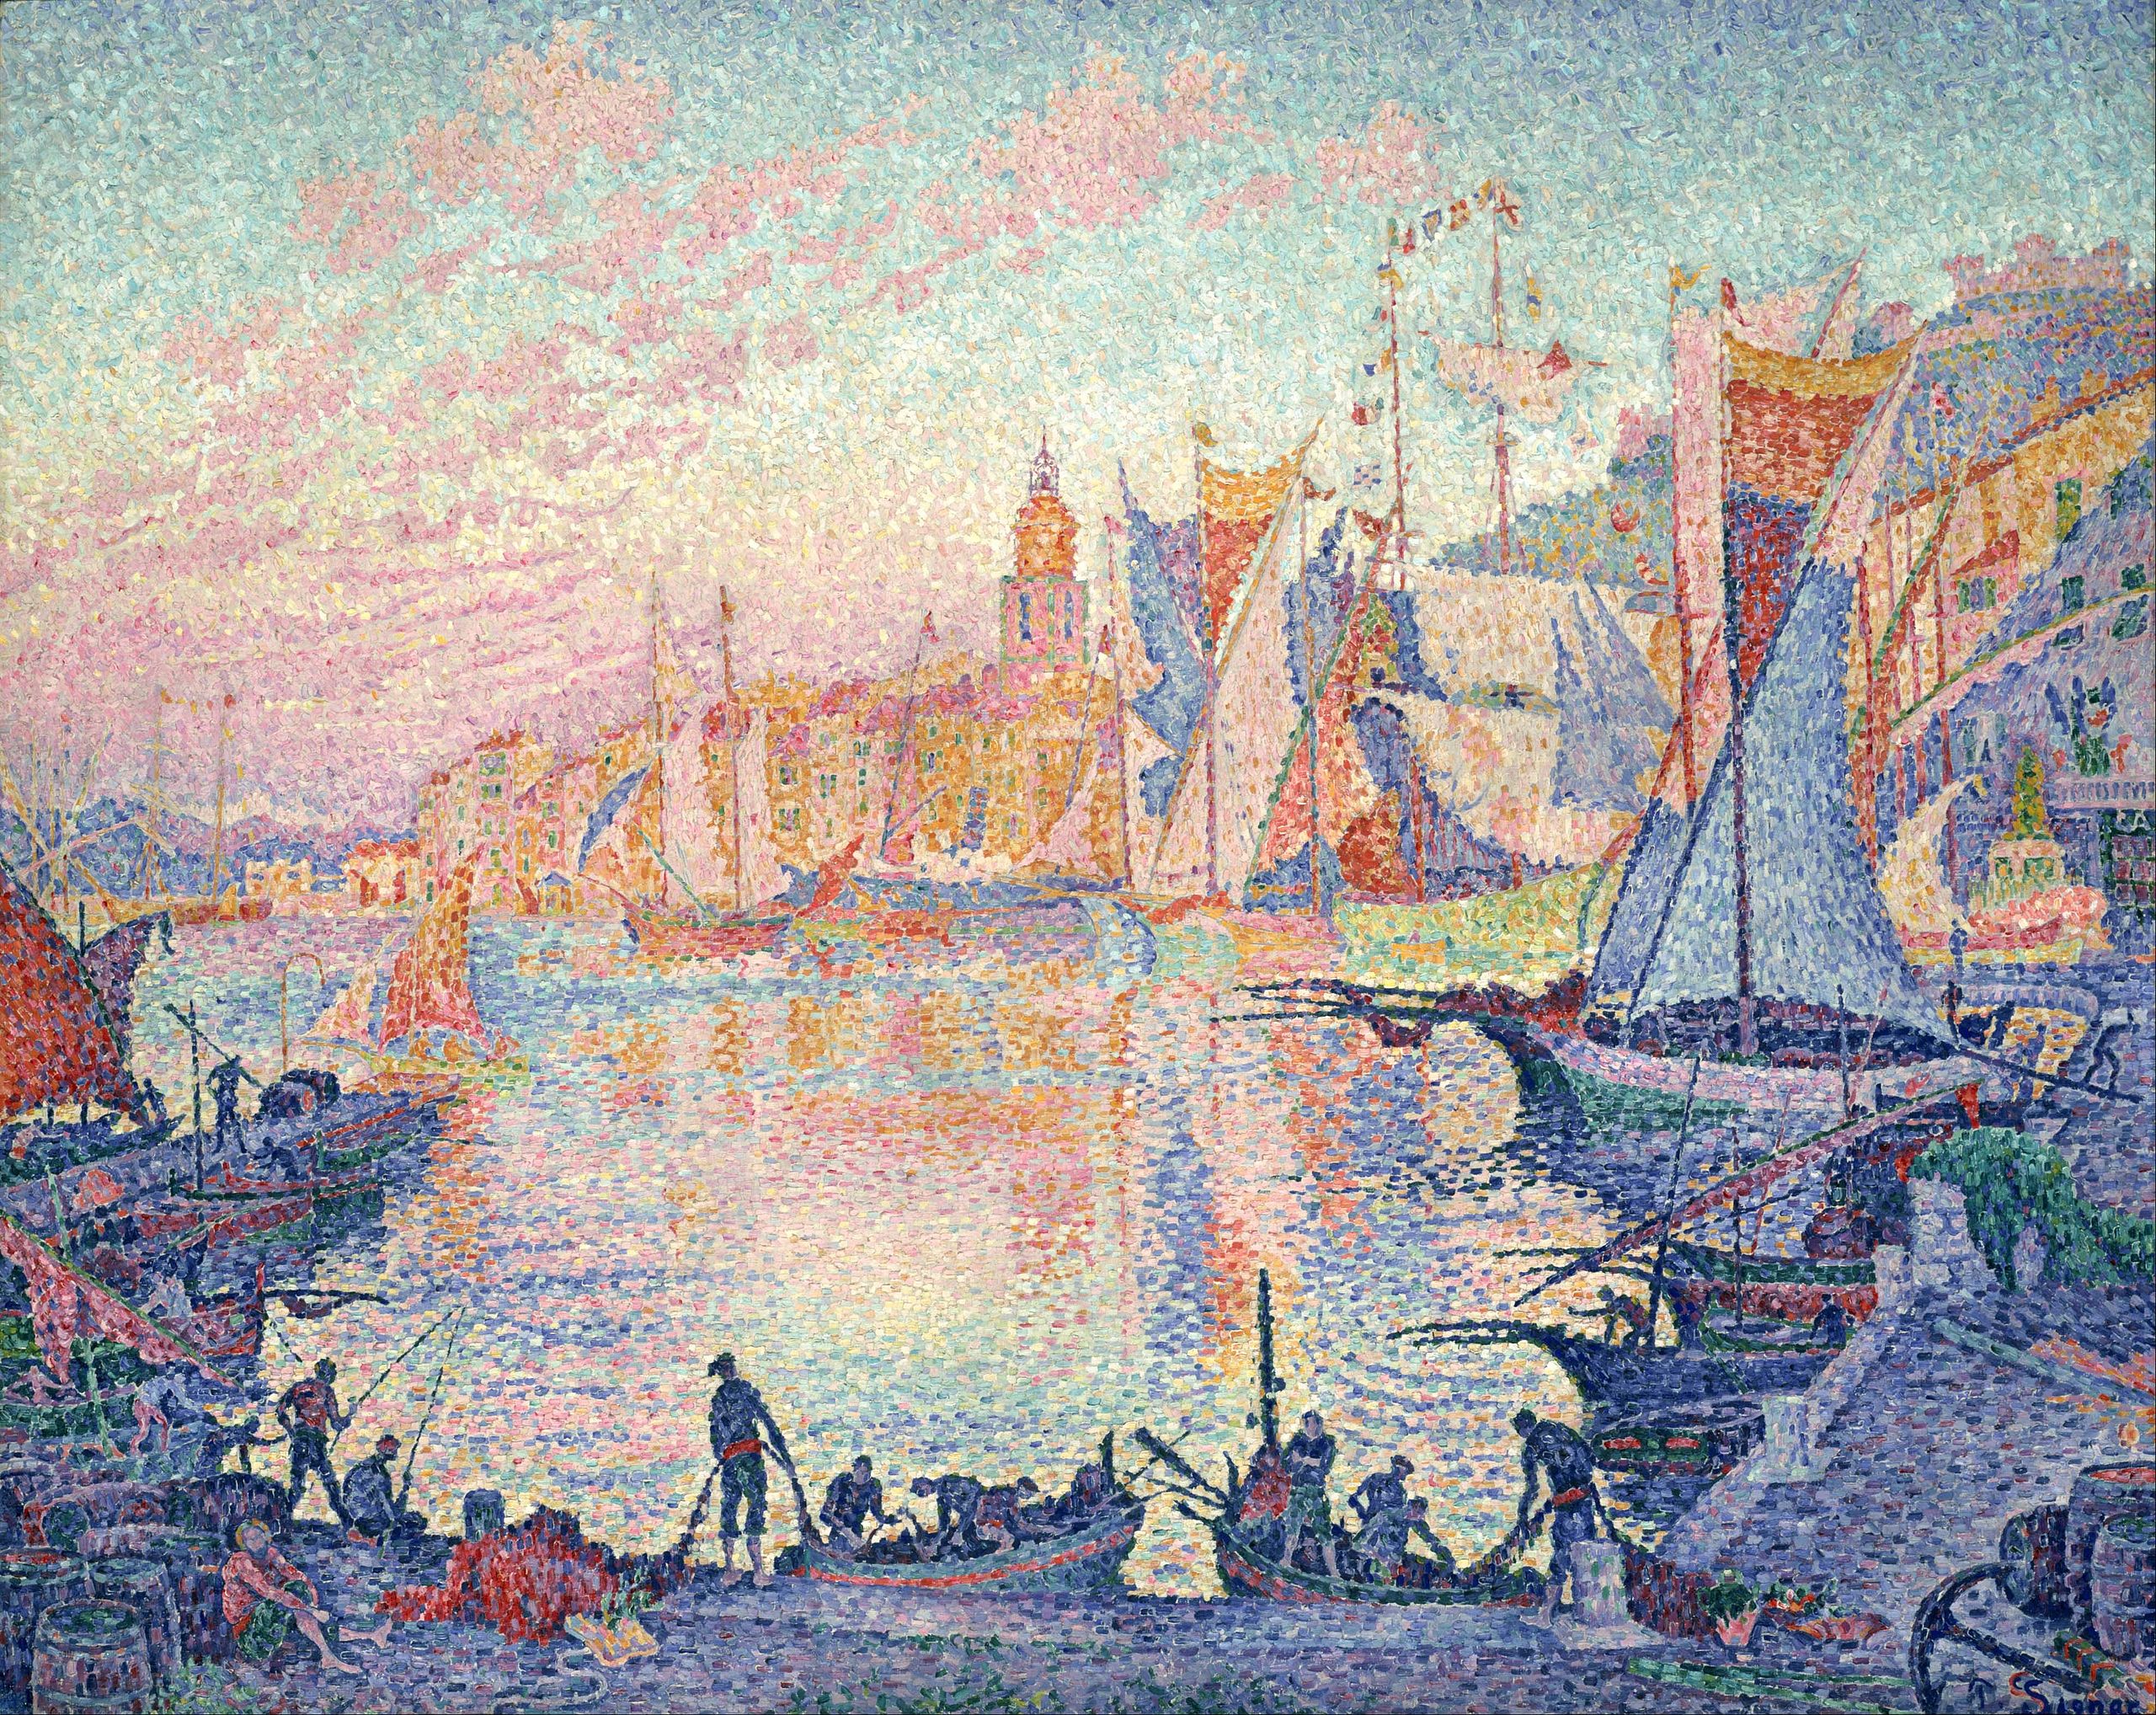 साँ-ट्रोपे का बंदरगाह by Paul Signac - 1901-1902 - 131 x 161.5 से.मी 